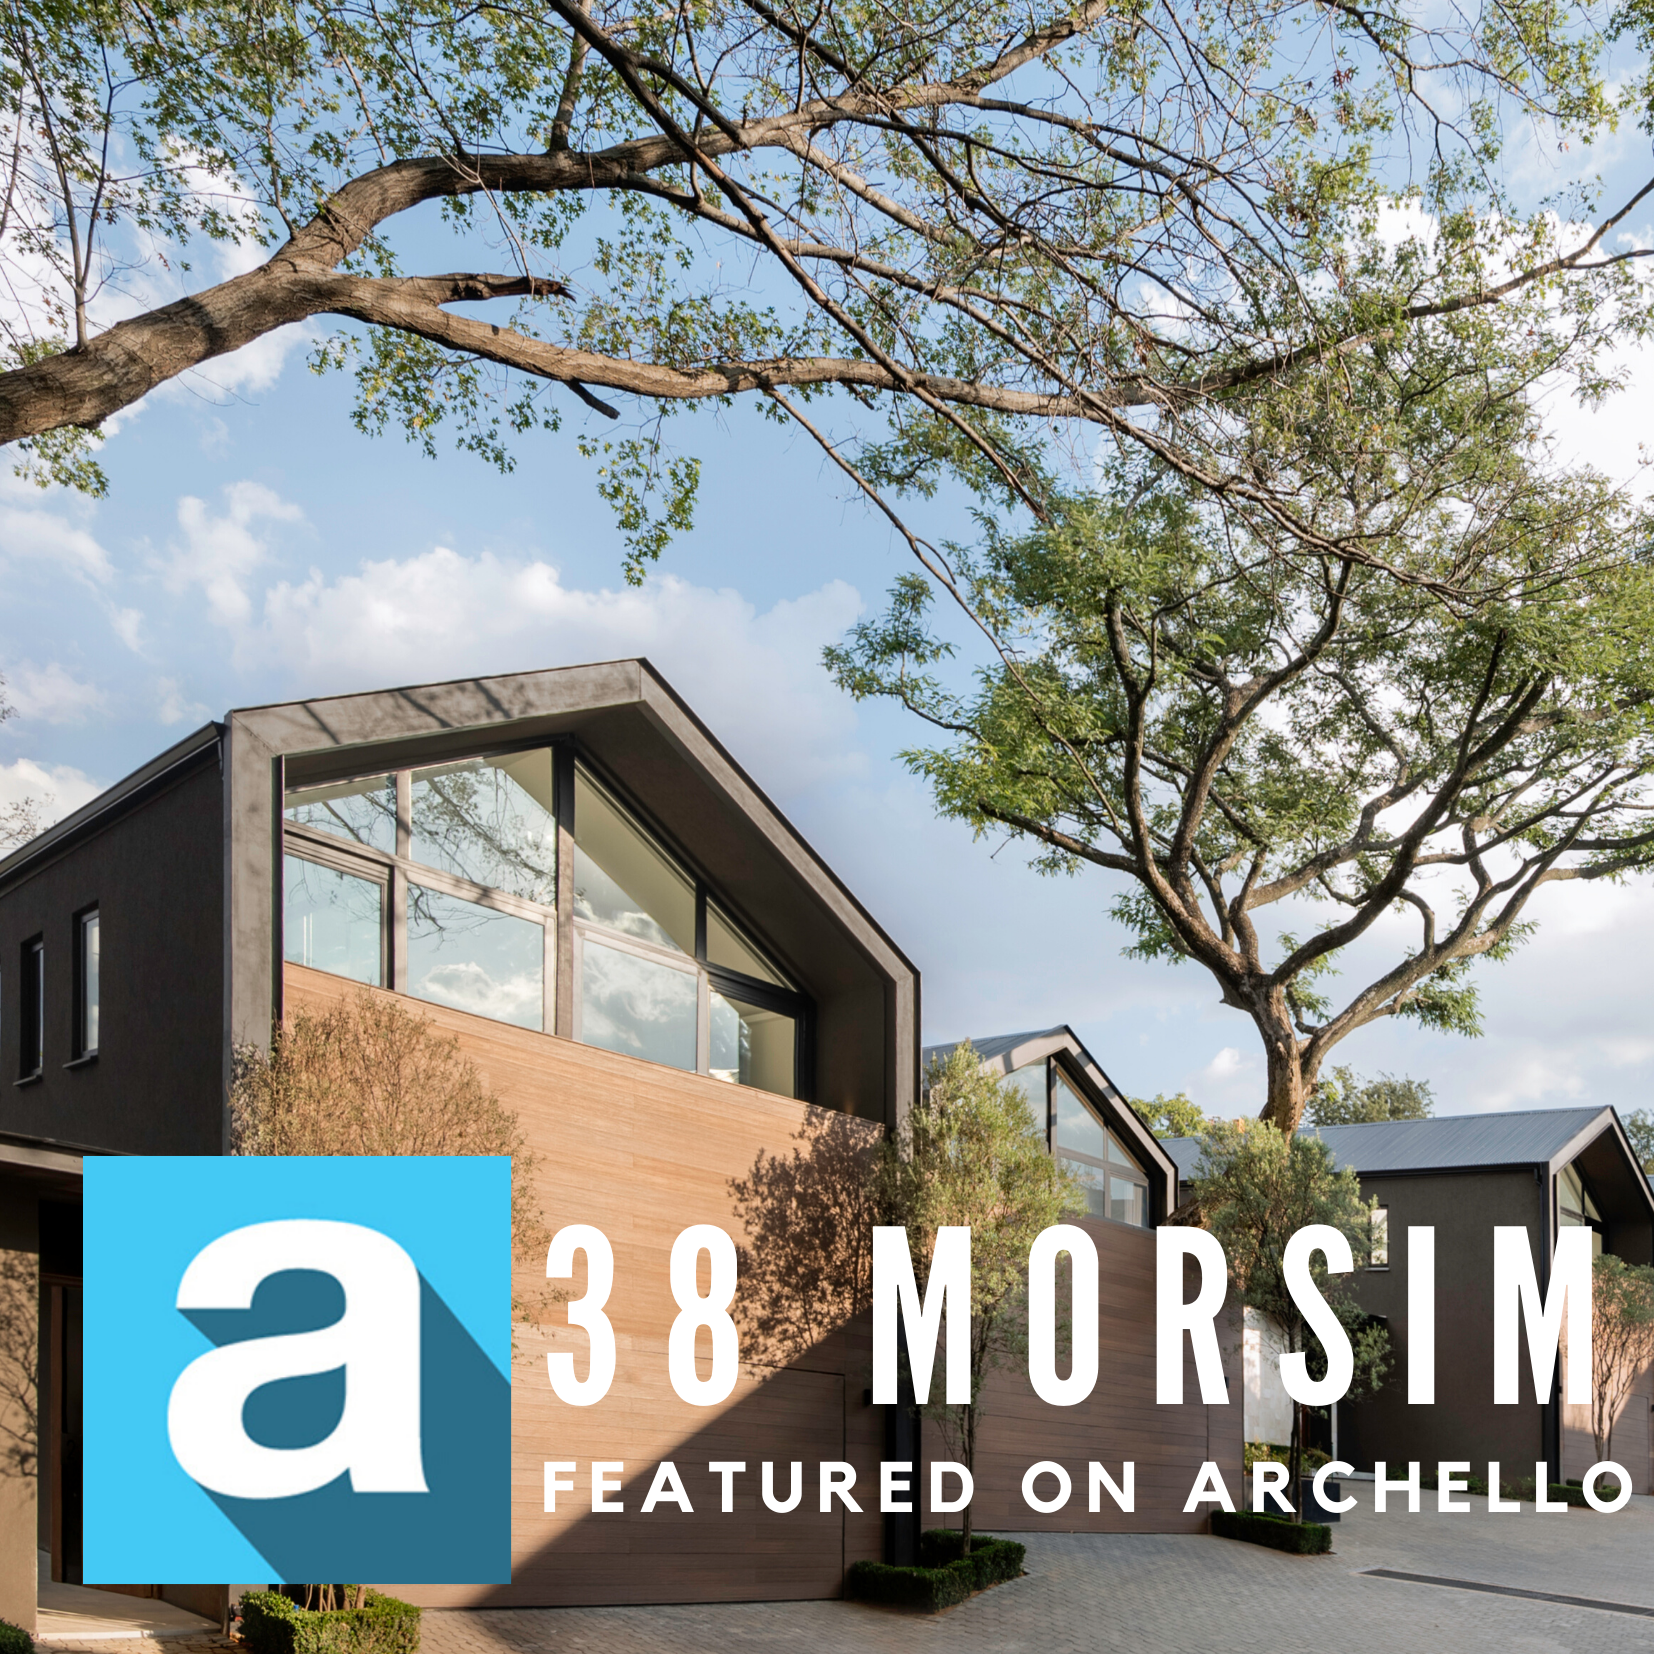 38 Morsim, featured on Archello